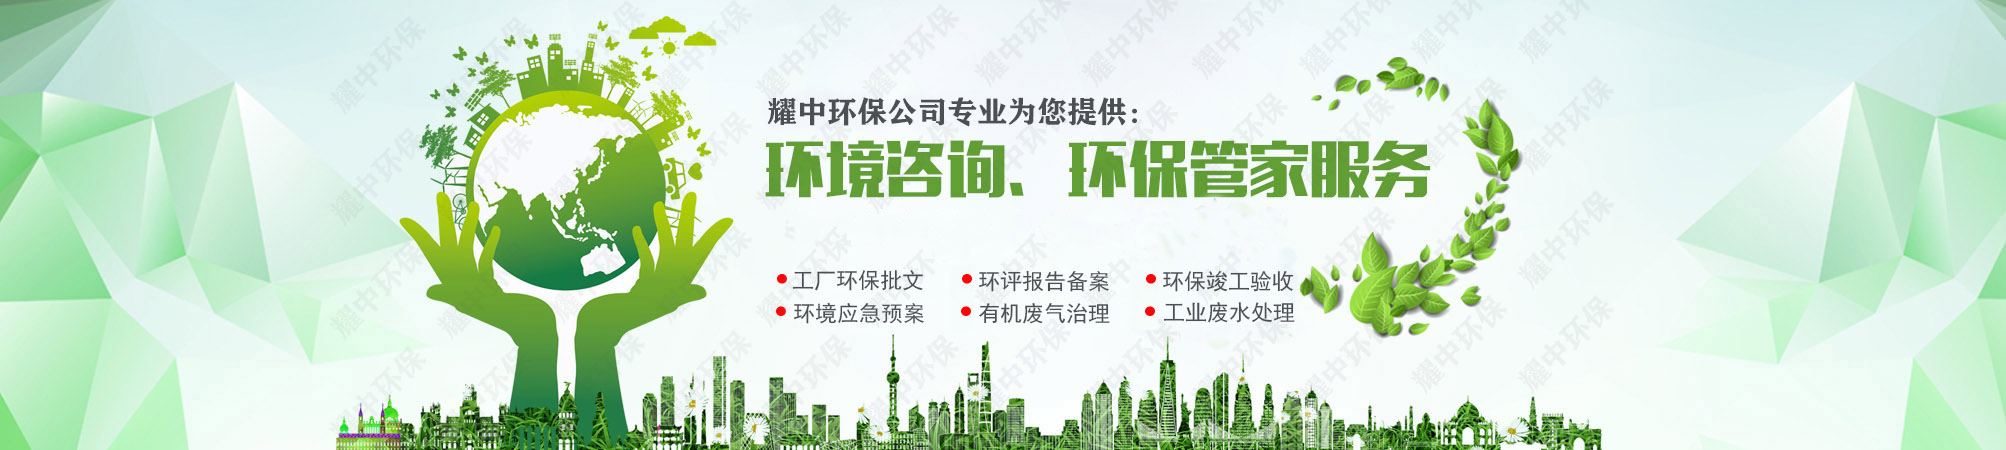 深圳工业废气处理设备安装,肇庆电线电缆厂废气处理设备安装